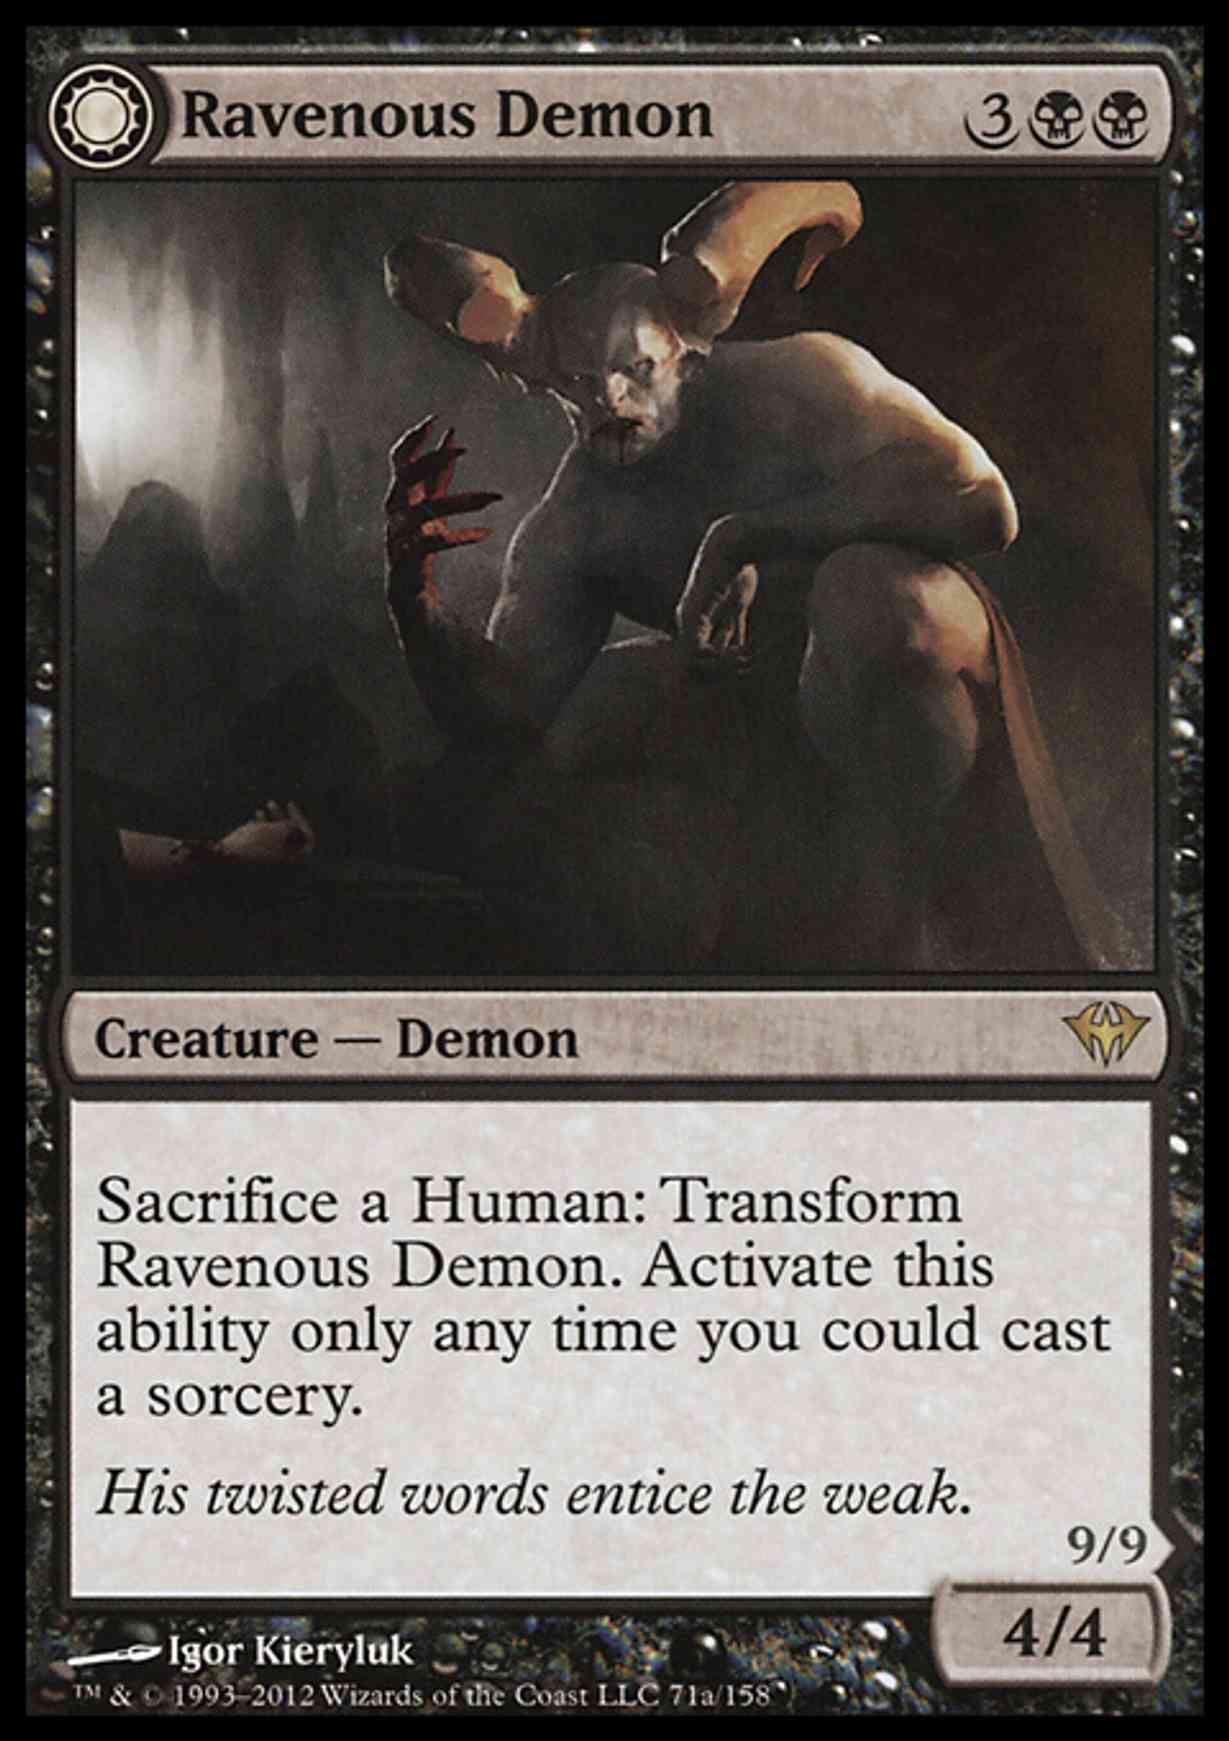 Ravenous Demon magic card front